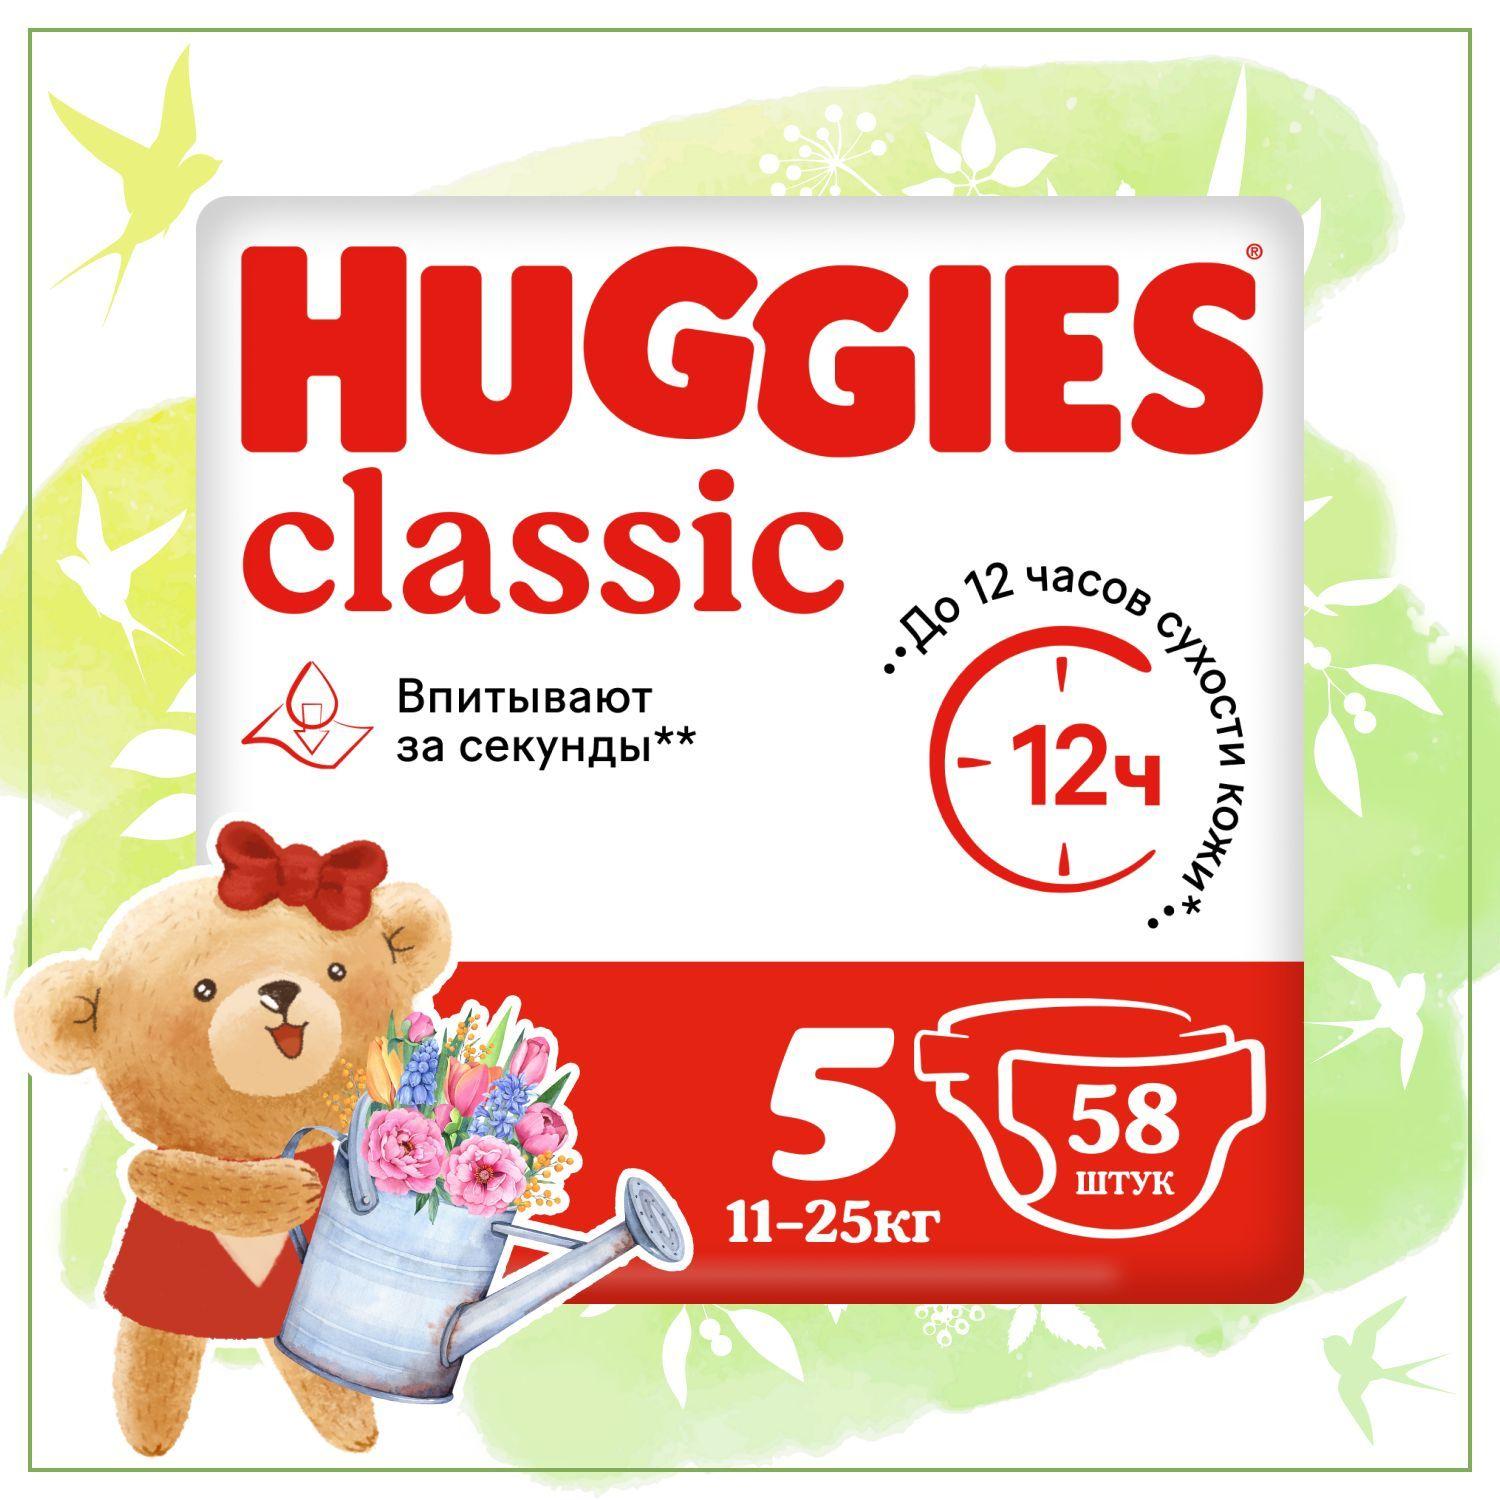 Подгузники Huggies Classic 5 XL размер детские, 11-25 кг, 58 шт